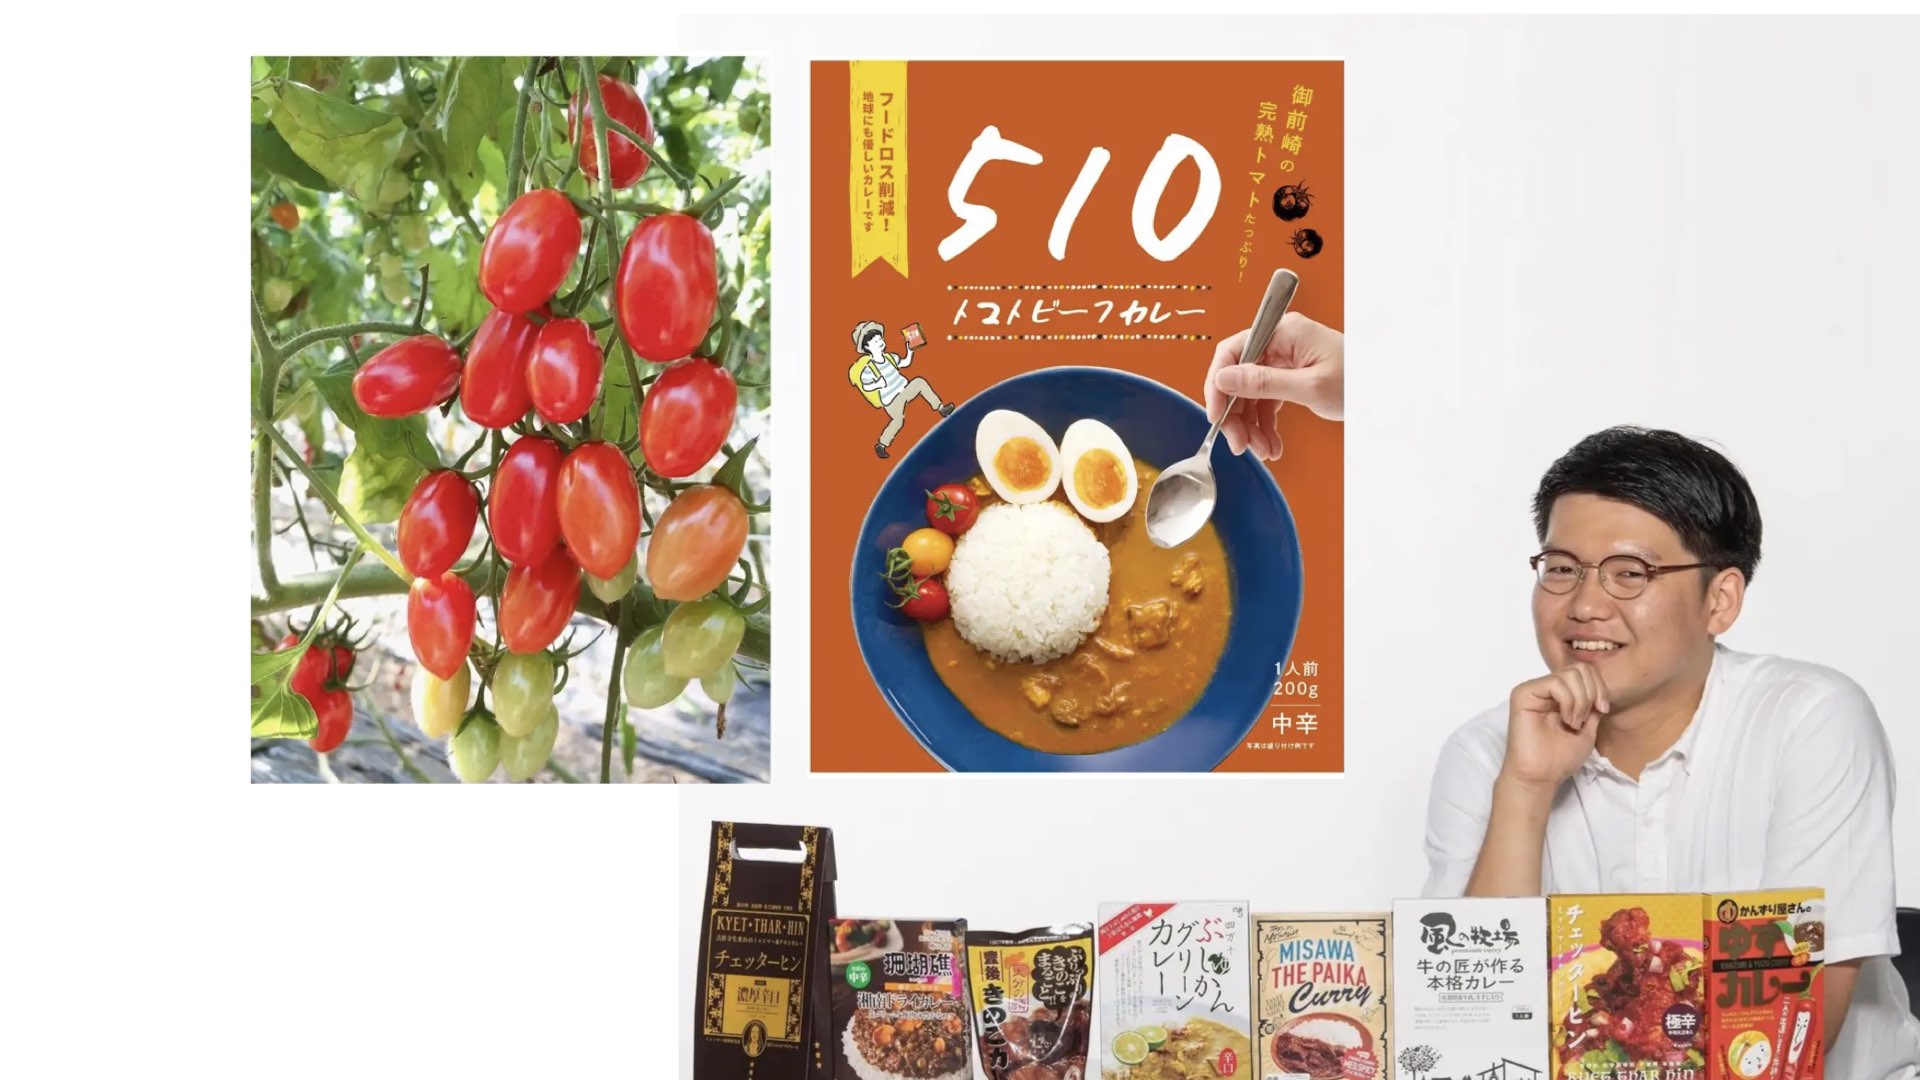 【目取眞先生PressRelease】MOTTAINAI BATON、レトルトカレーでフードロスを削減 静岡県の後藤農園が栽培した規格外のミニトマト約3000個を使用したレトルトカレーを7月7日より発売中